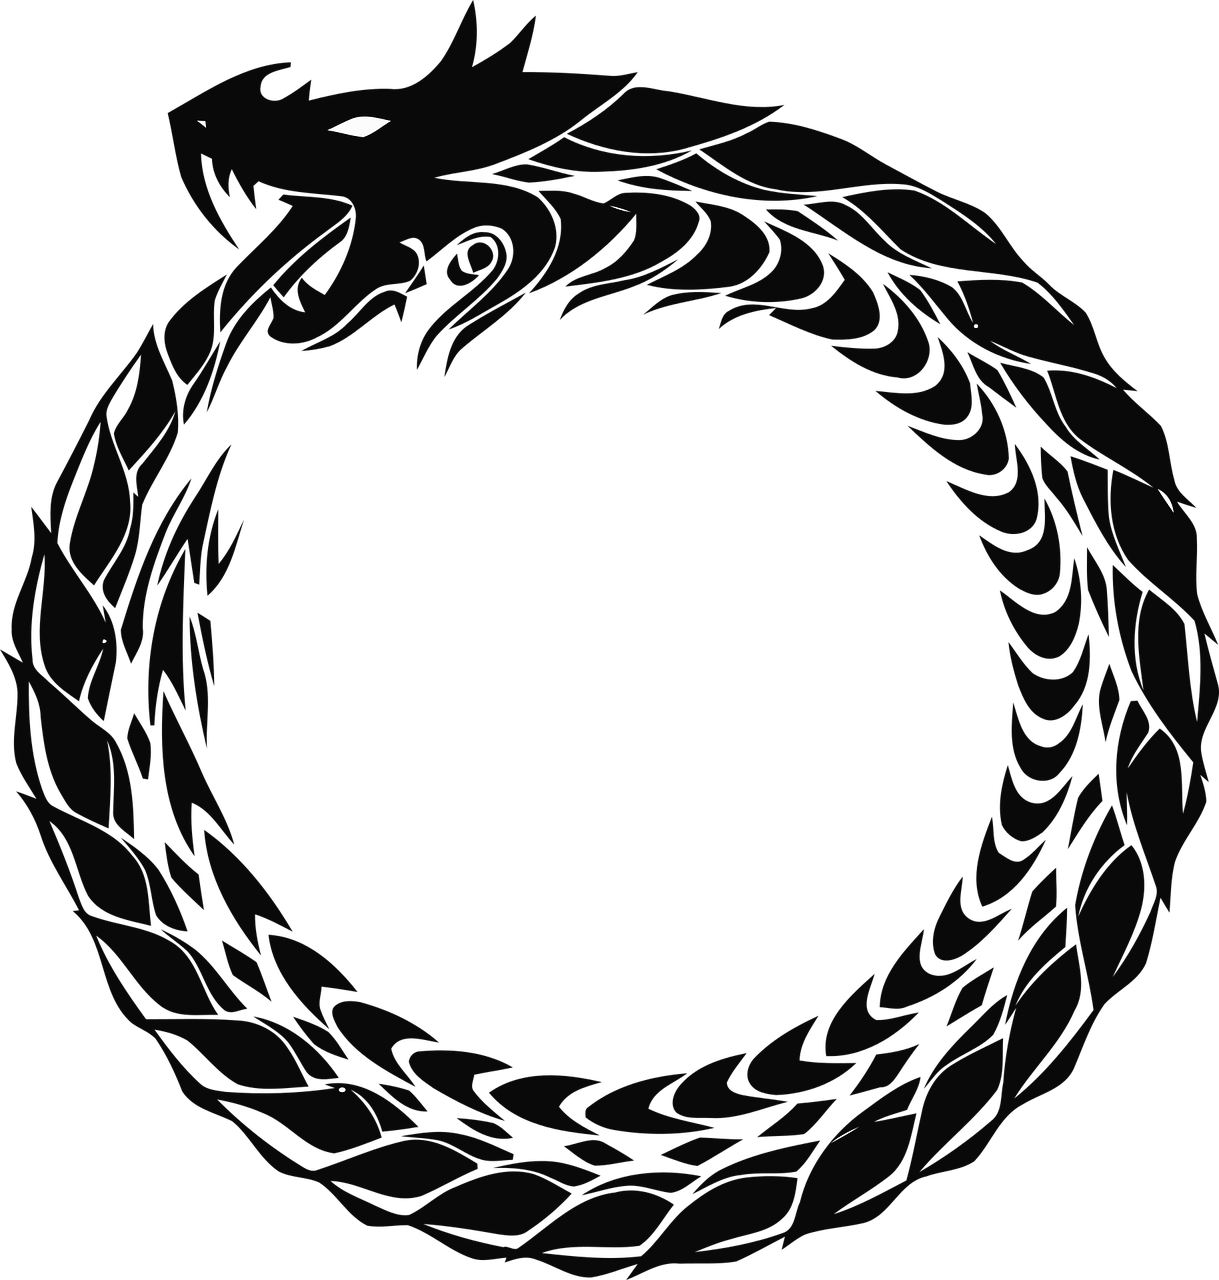 Ouroboros symbol